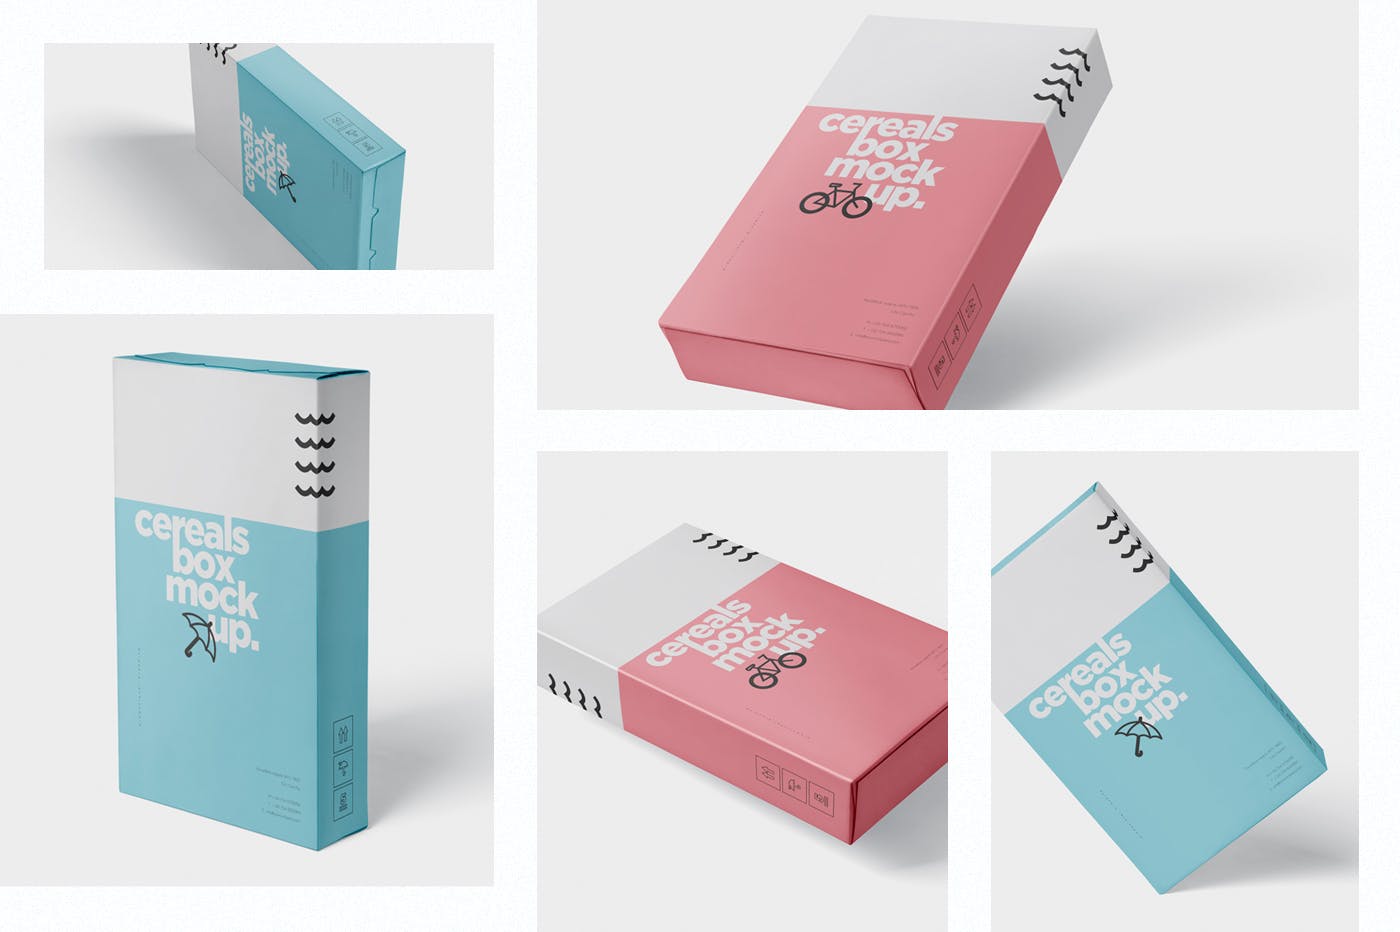 香烟/避孕套/扑克牌适用的超薄包装盒外观设计样机 Cereals Box Mockup – Slim Size Box插图1